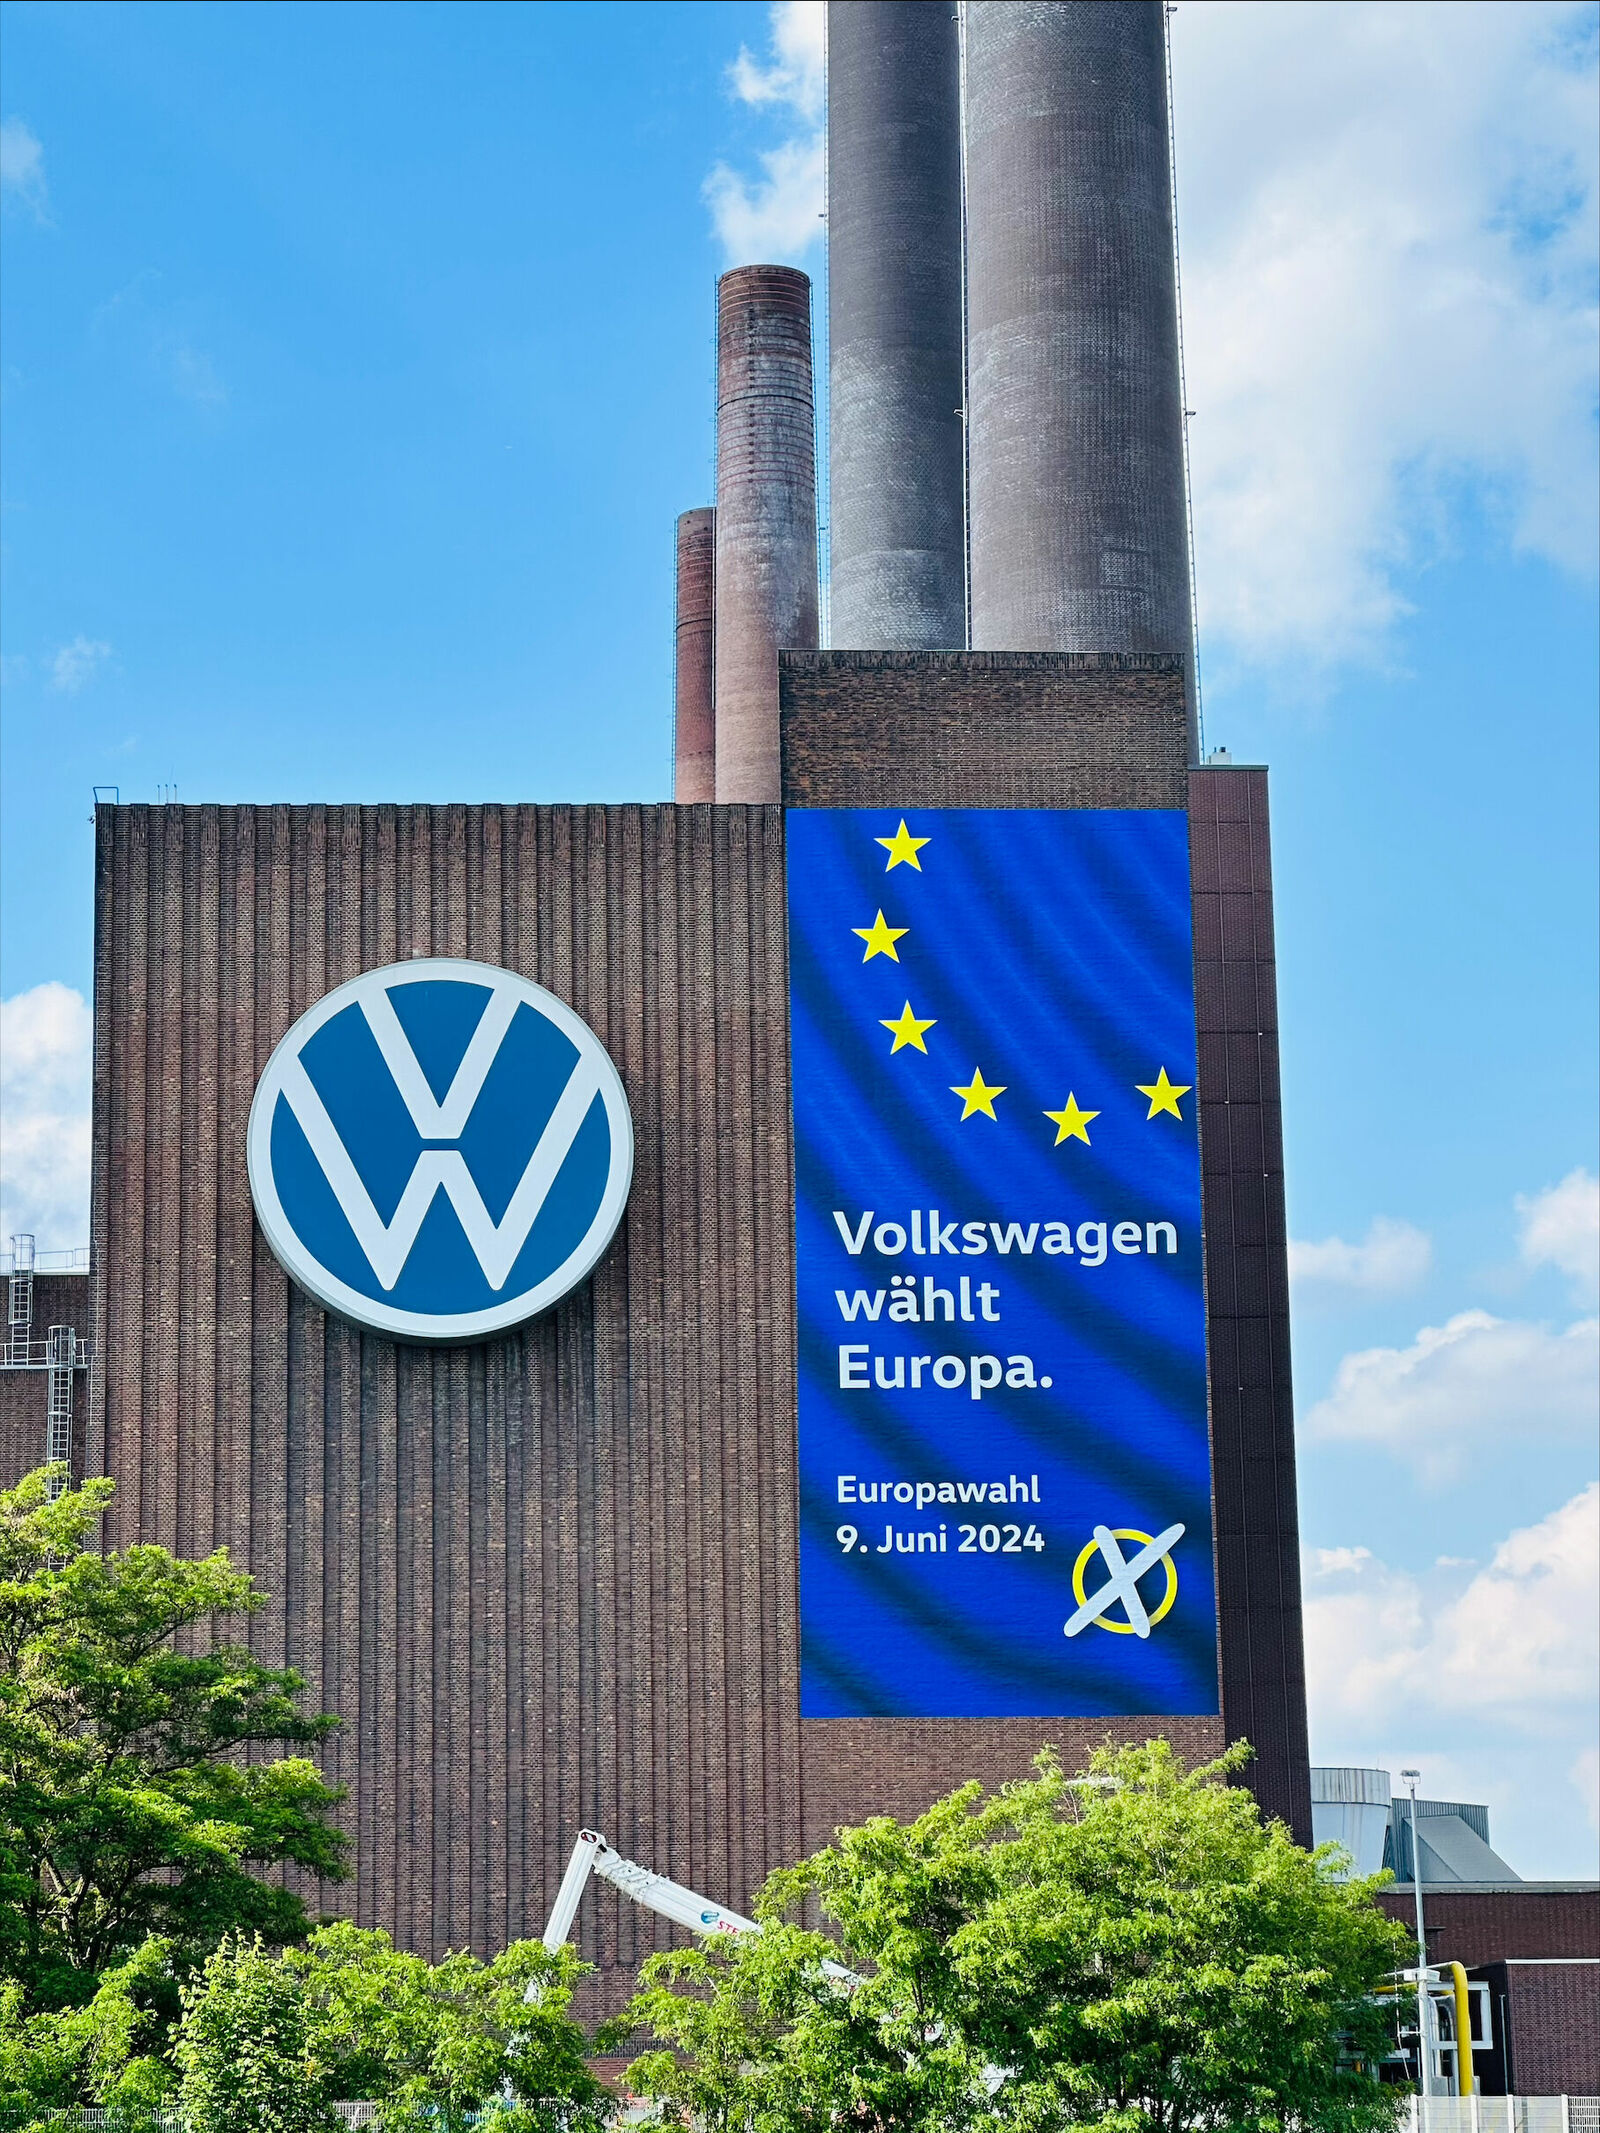 Ein großes Volkswagen-Werksgebäude mit einem Banner, das für die Europawahl am 9. Juni 2024 wirbt, mit einem blauen Hintergrund und gelben Sternen der EU-Flagge.